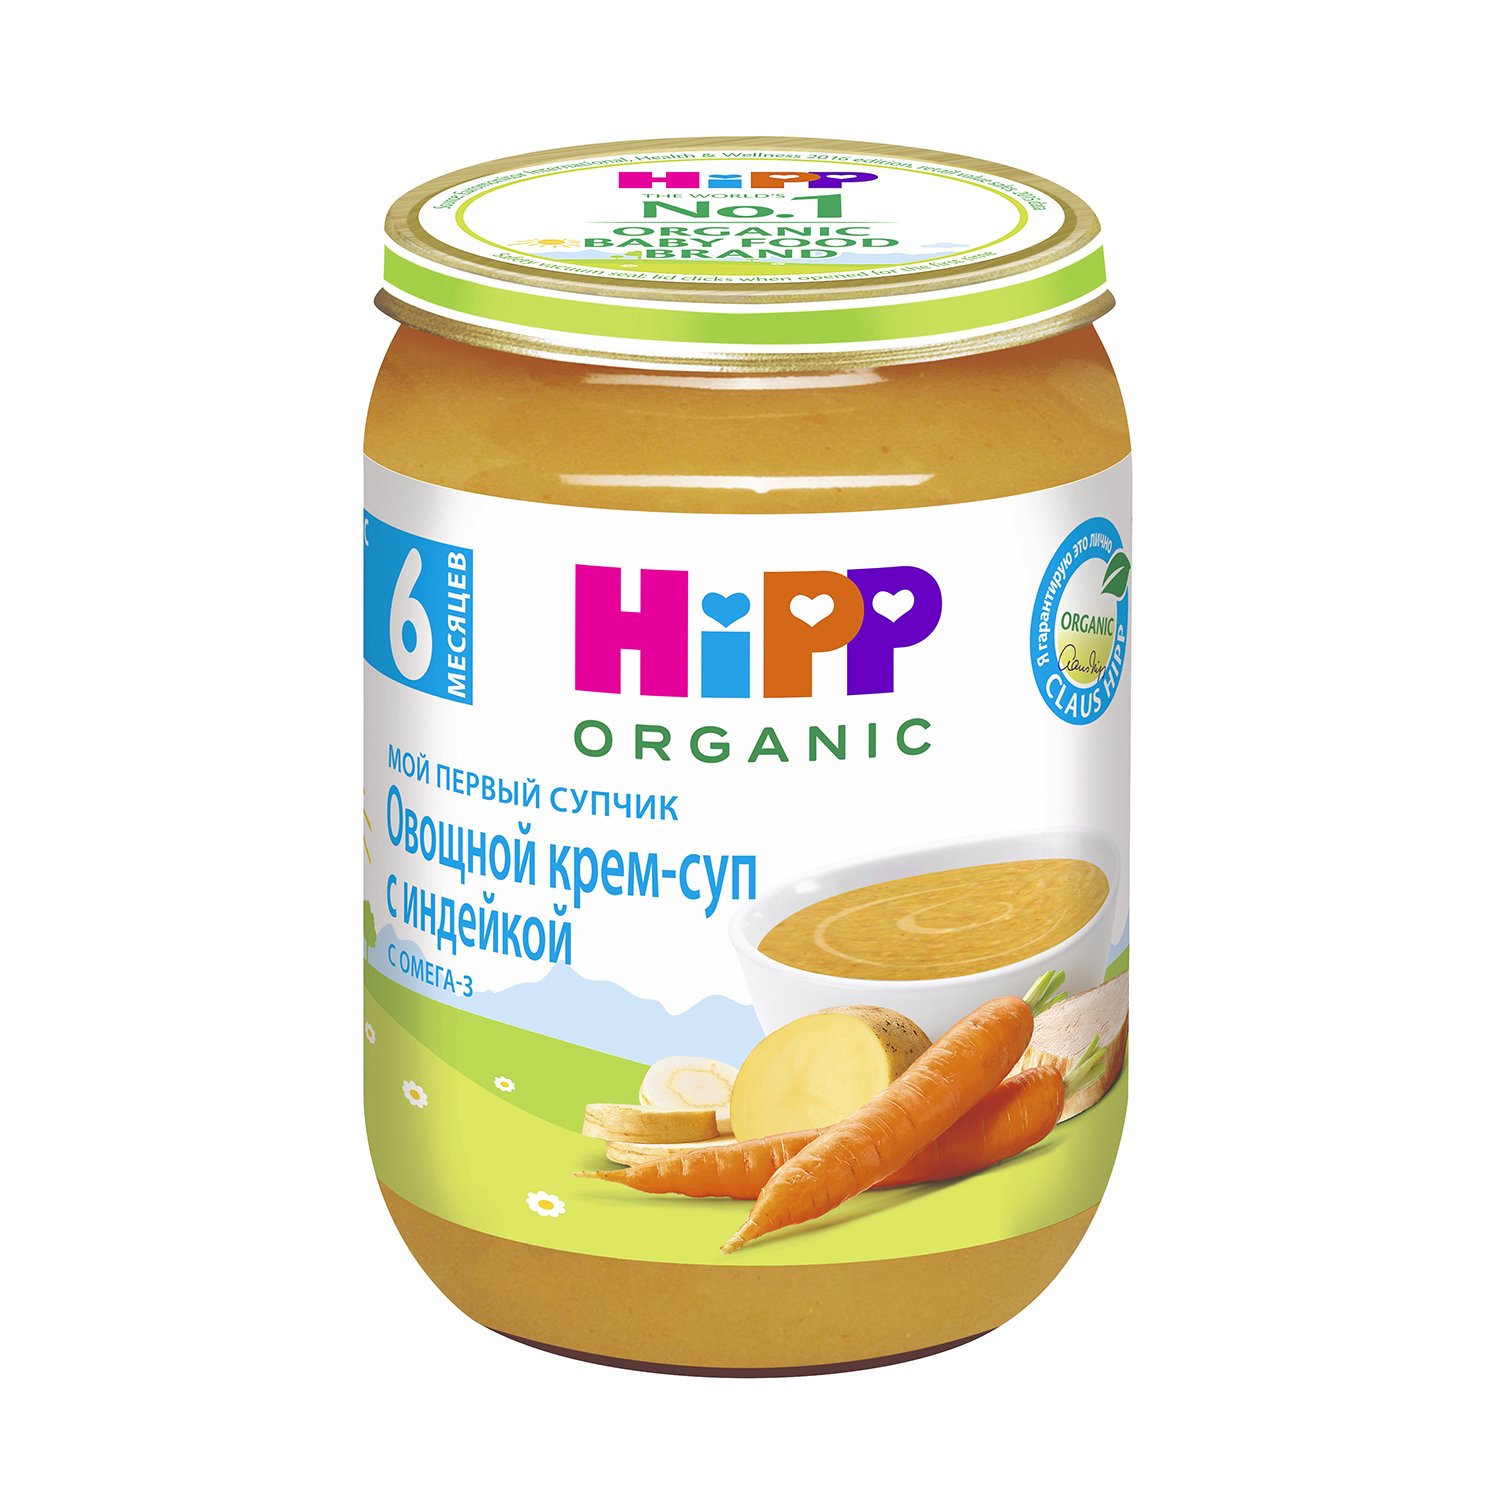 Hipp organic овощной крем-суп с индейкой с омега-3 6+месяцев 190г